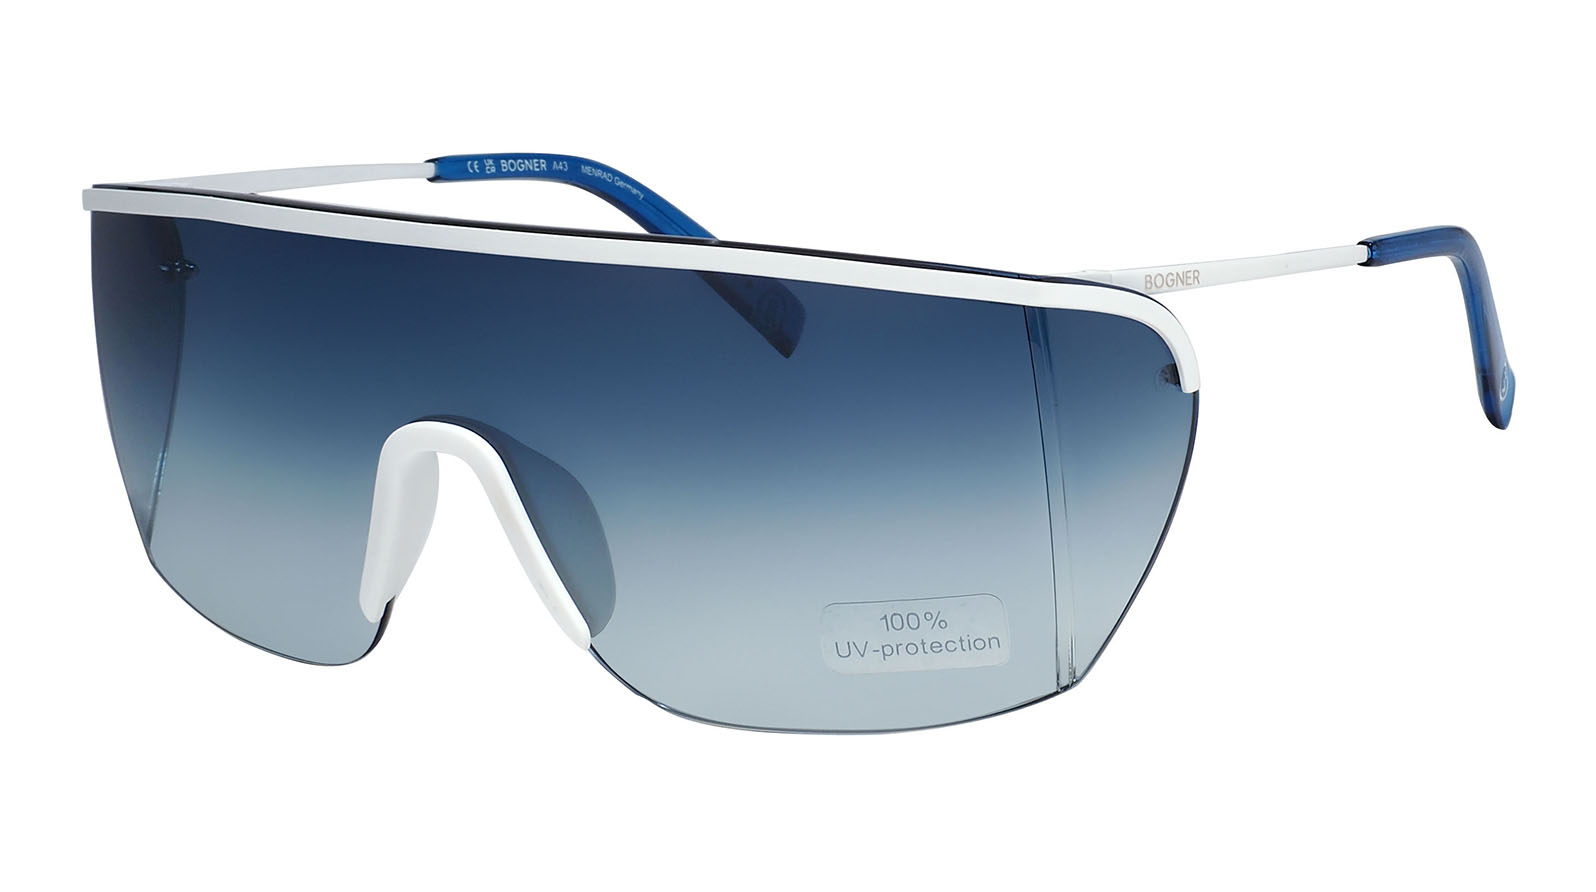 Bogner 67319 1500 унисекс поляризованный клип солнцезащитные очки близорукость поляризованный изменение клипа на солнцезащитных очках водитель очки